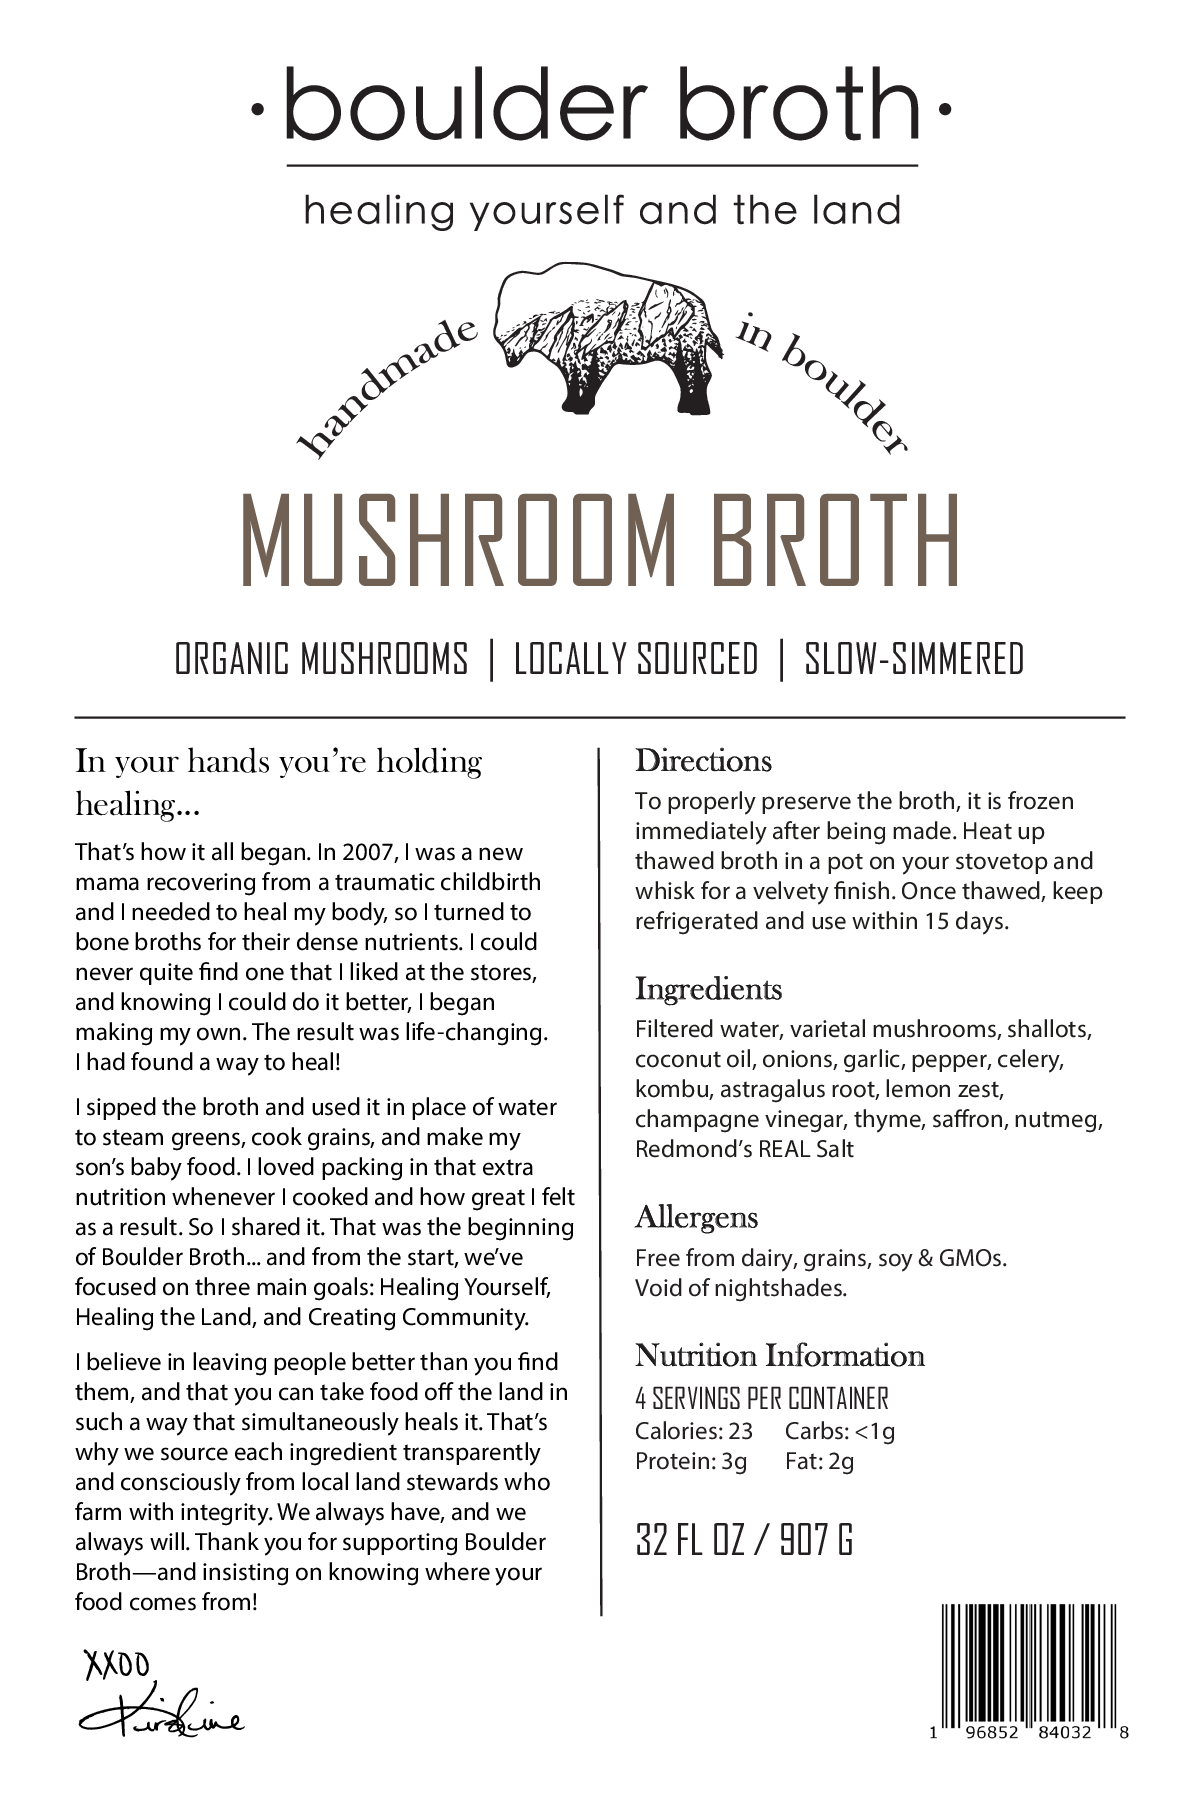 Mushroom Broth